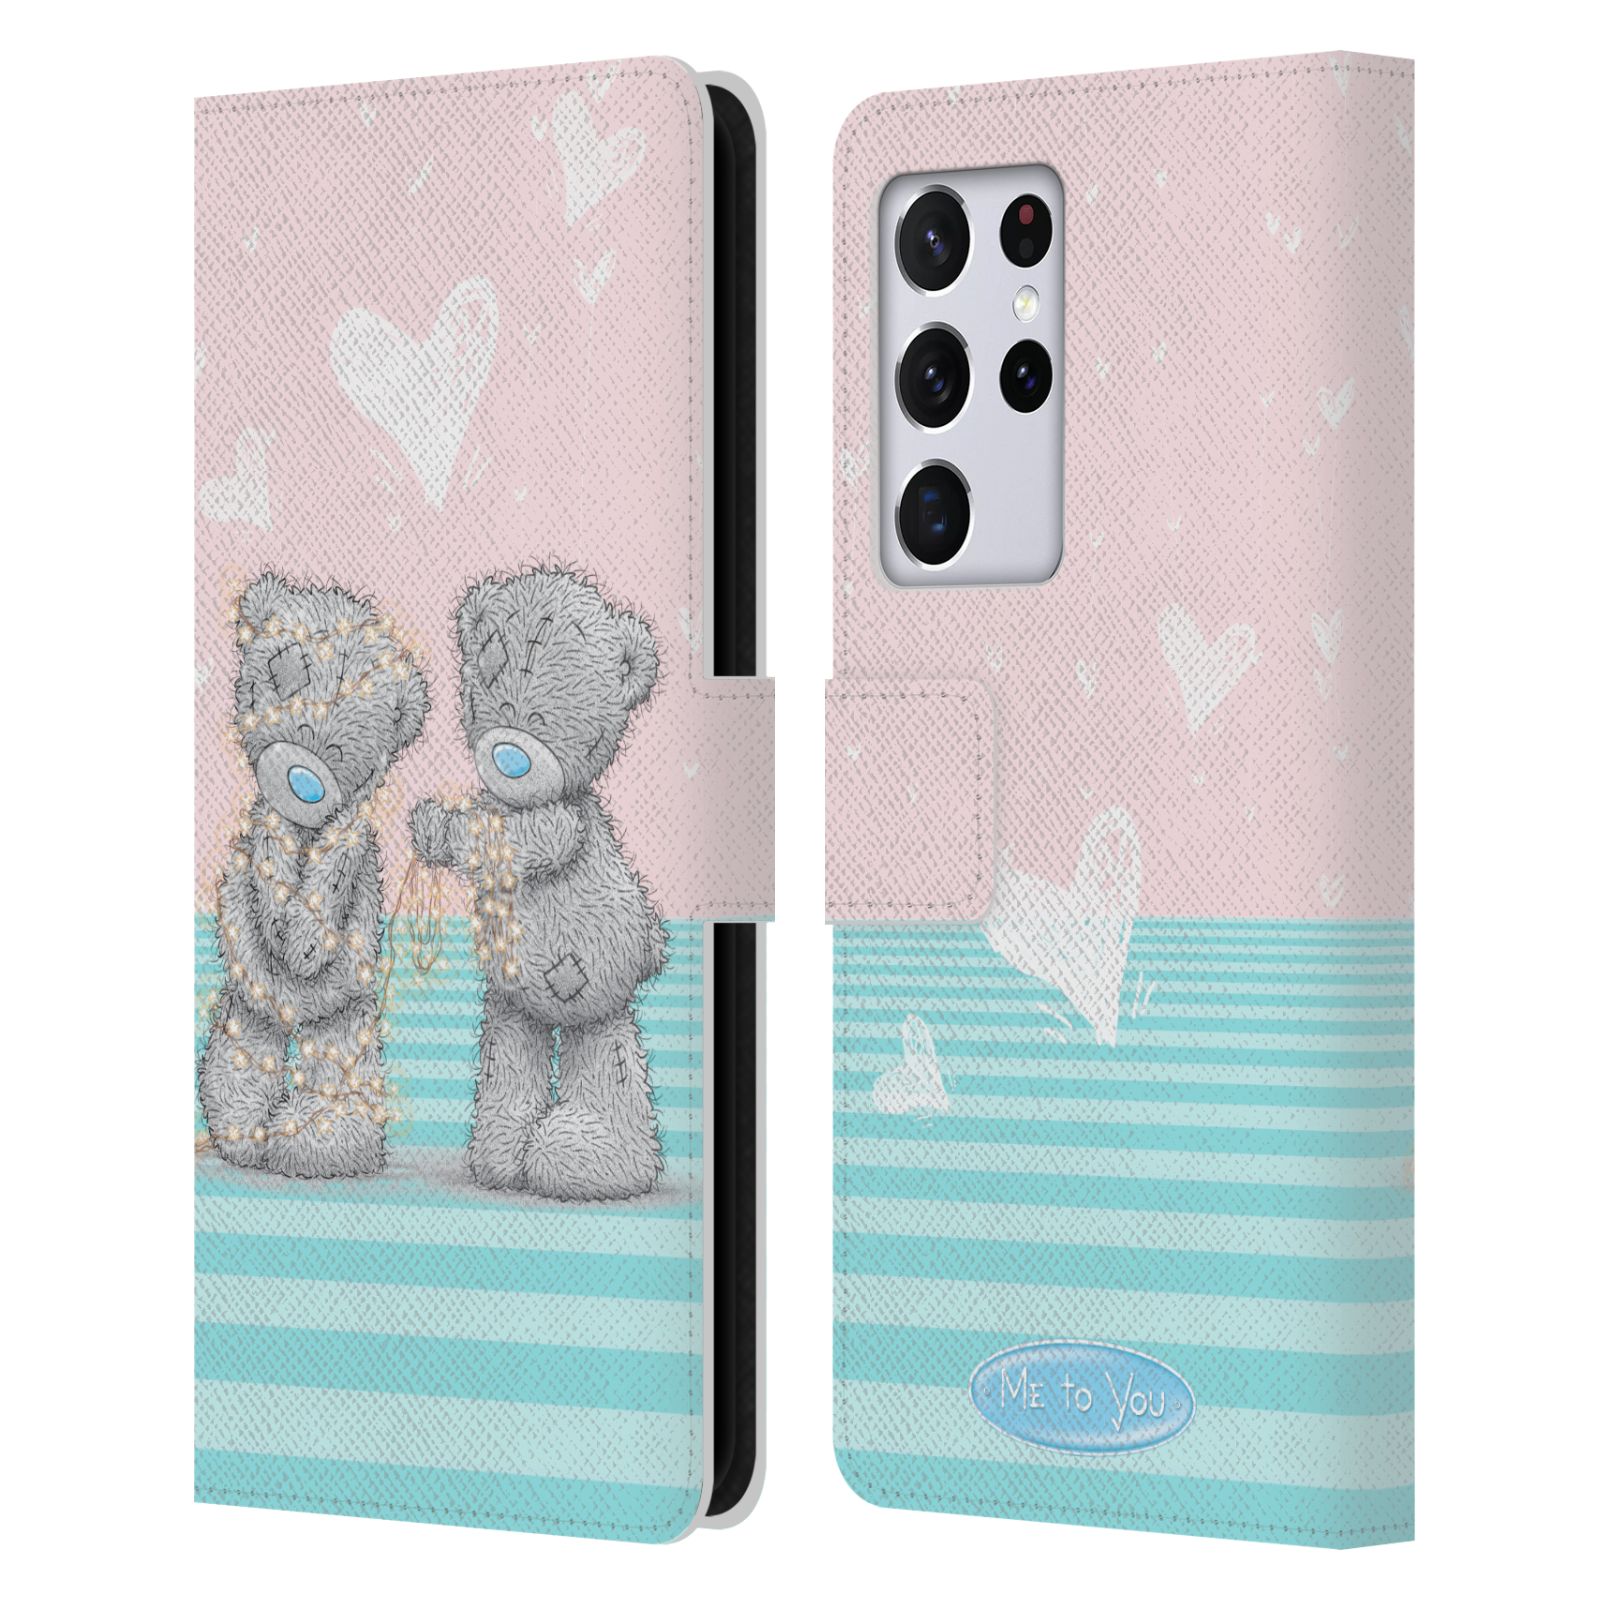 Pouzdro na mobil Samsung Galaxy S21 ULTRA 5G  - HEAD CASE - Me To You - Zamilovaní medvídci